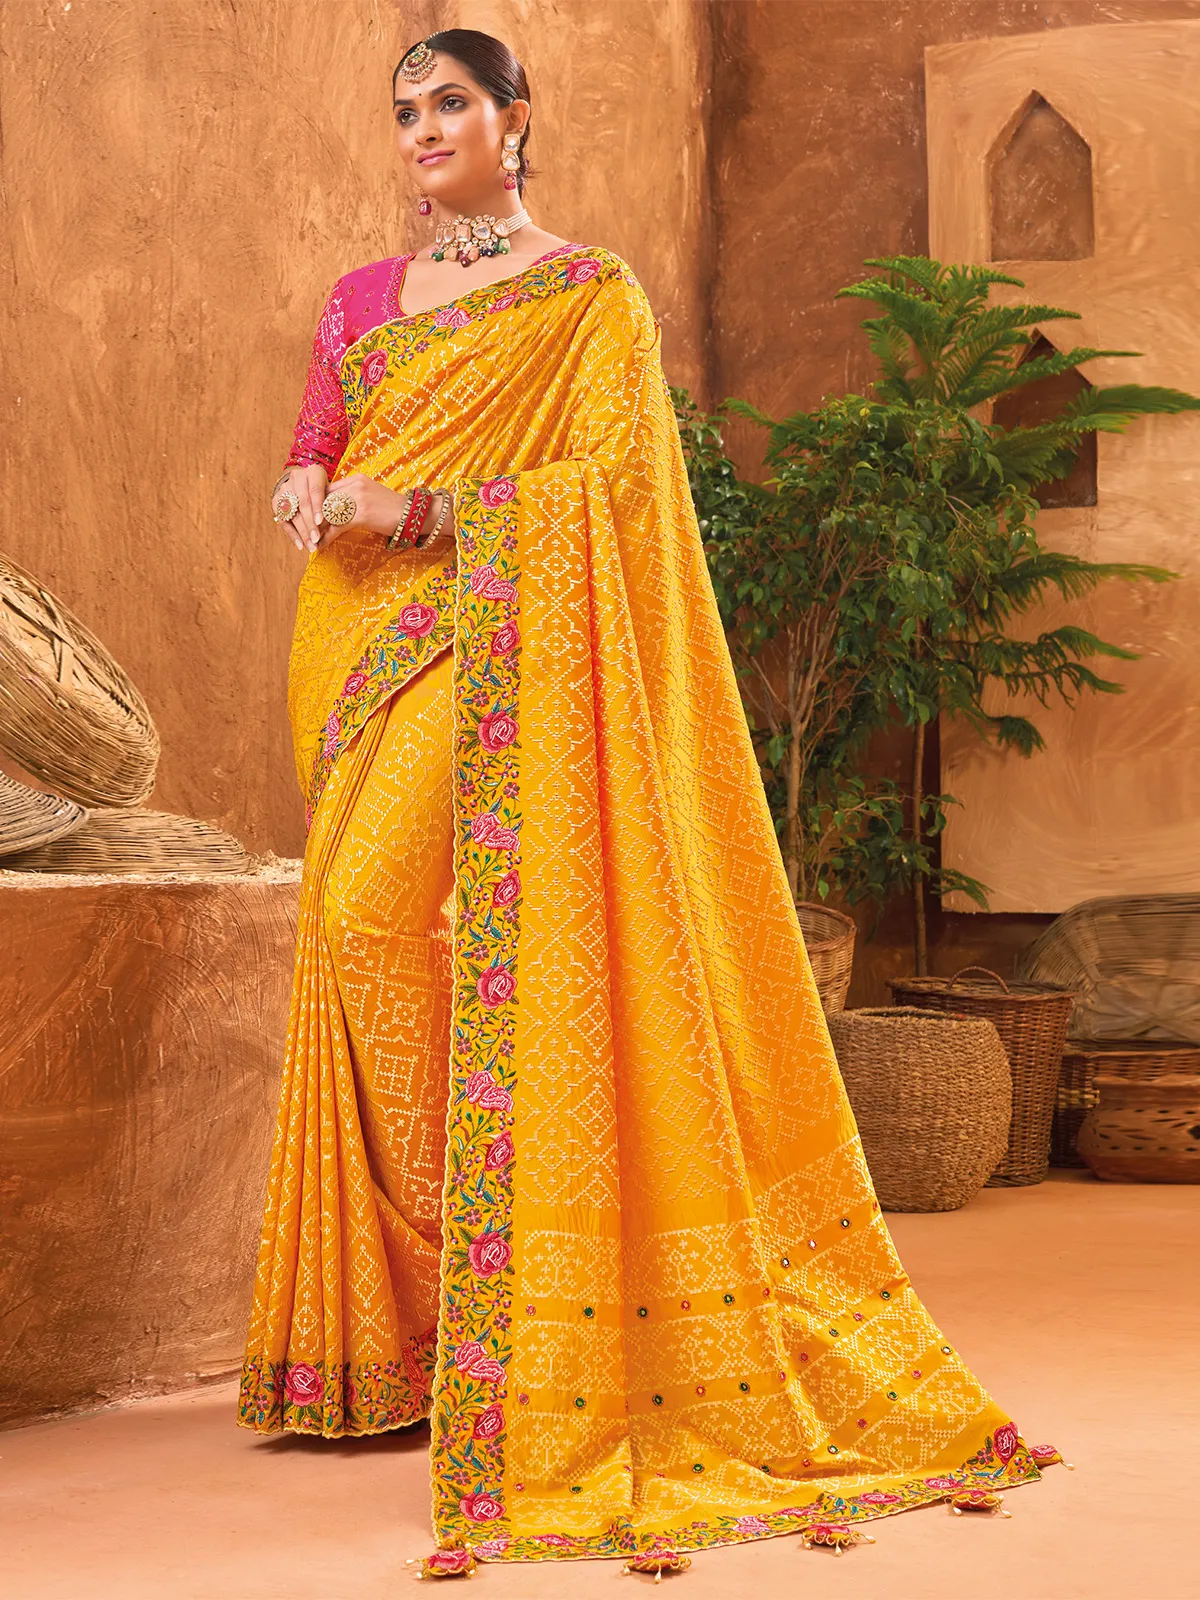 Stunning beautiful yellow banarasi silk saree